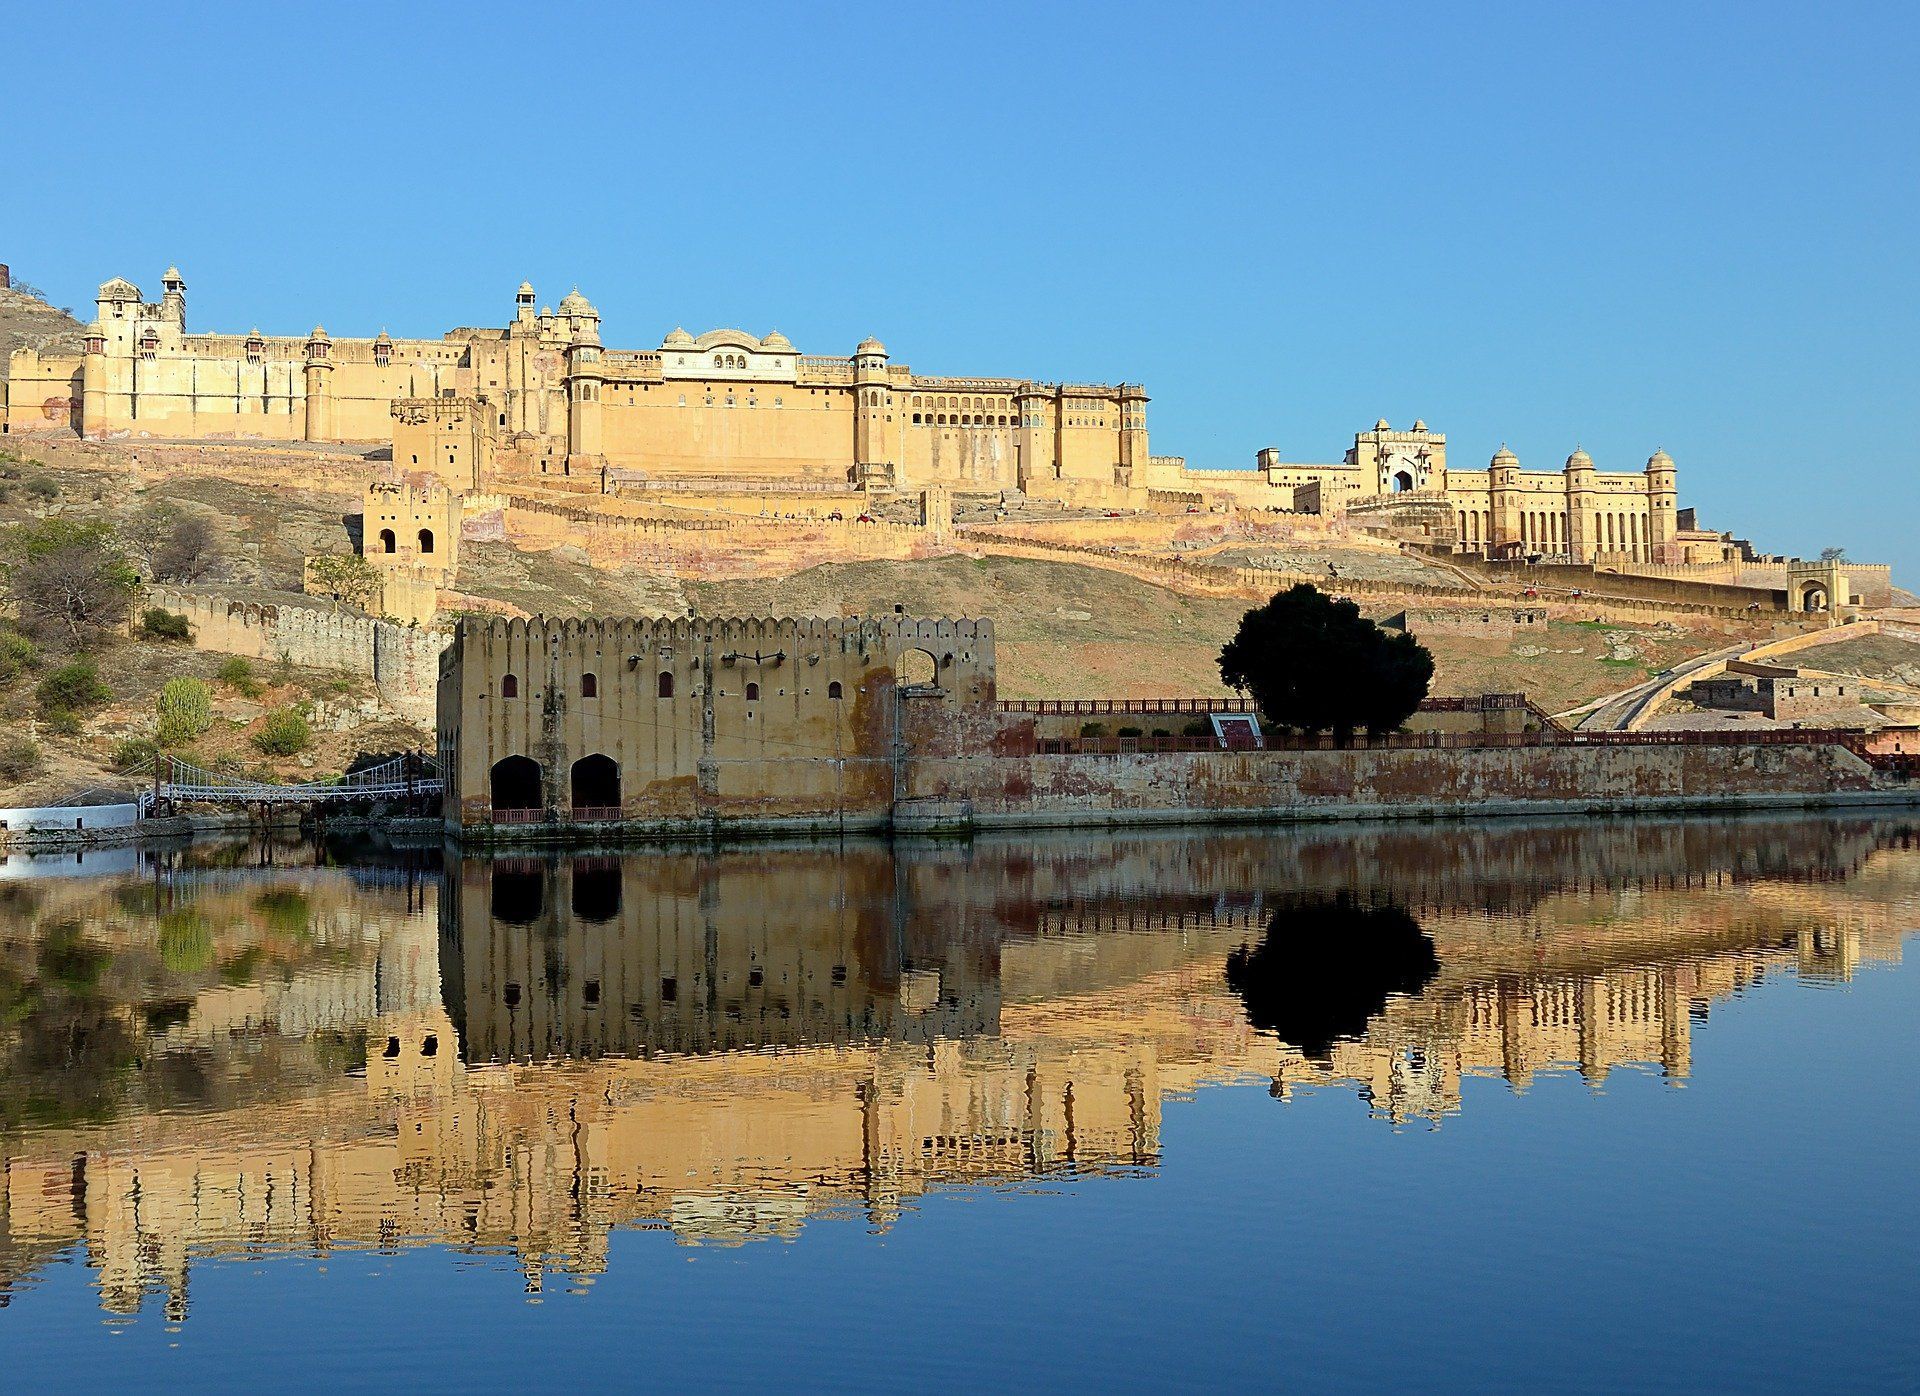 Fort Amber - Jaipur